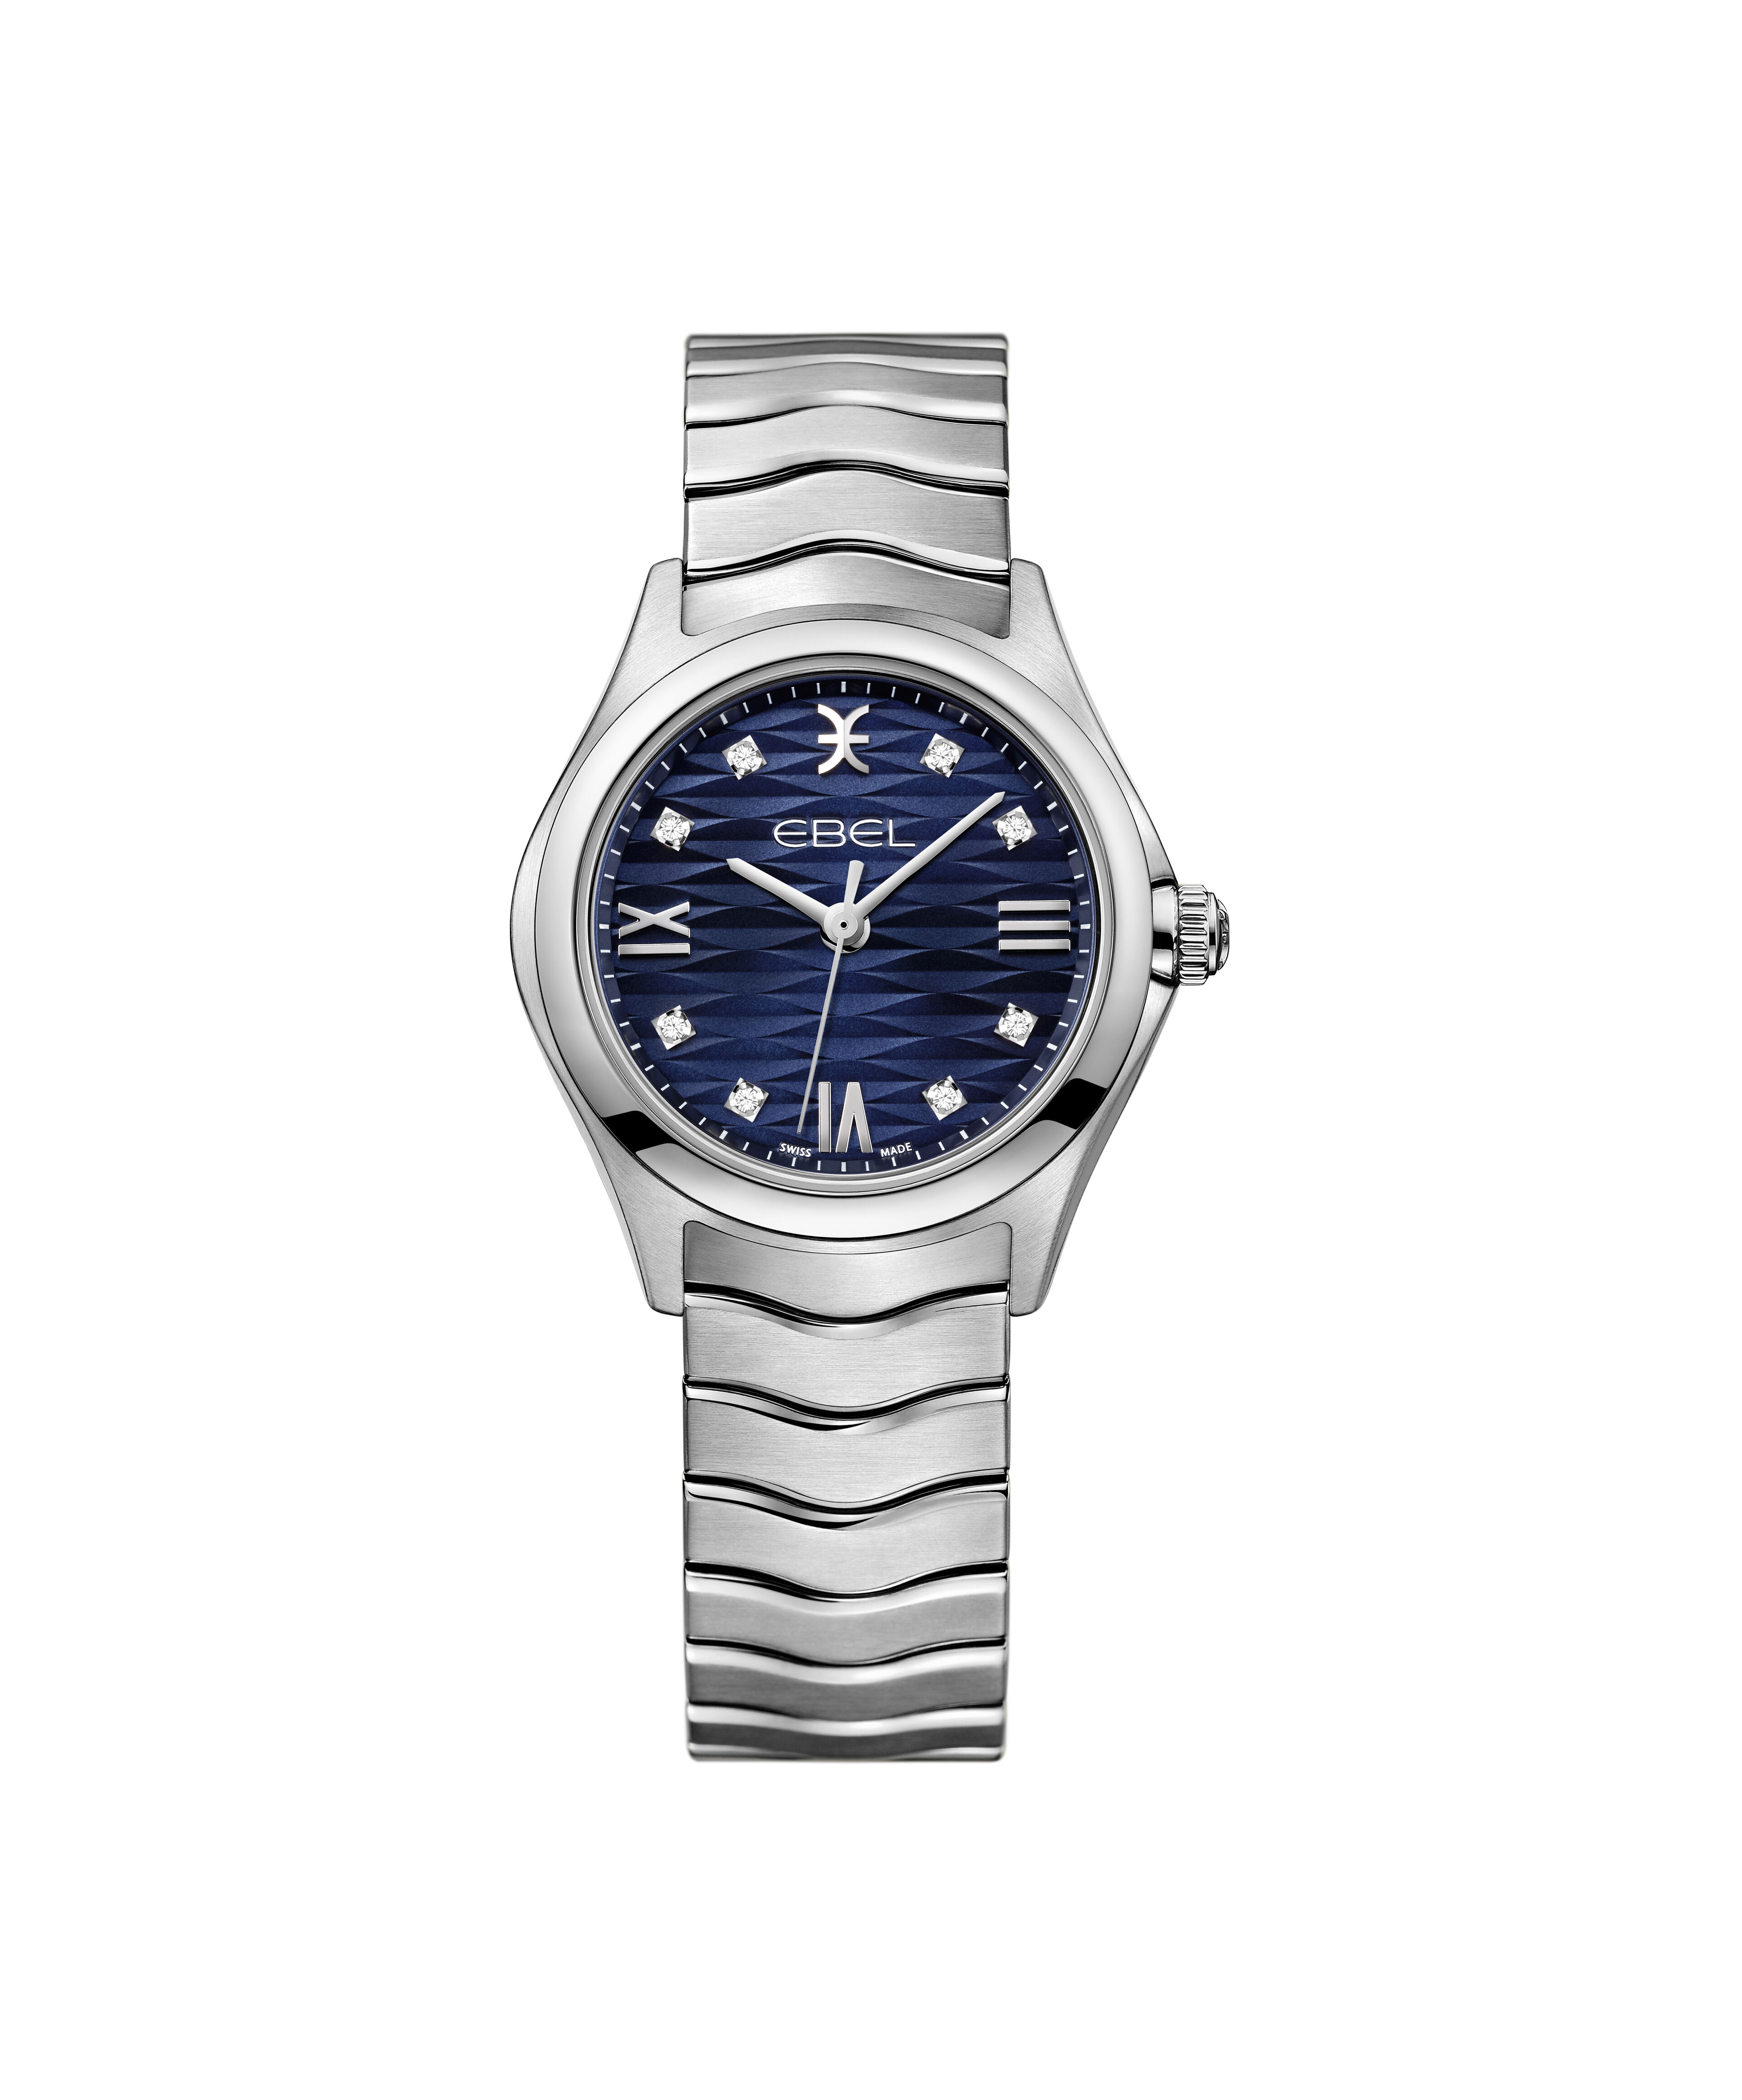 Replica Vacheron Constantin Overseas Chronograph Blue Dial Men's Watch